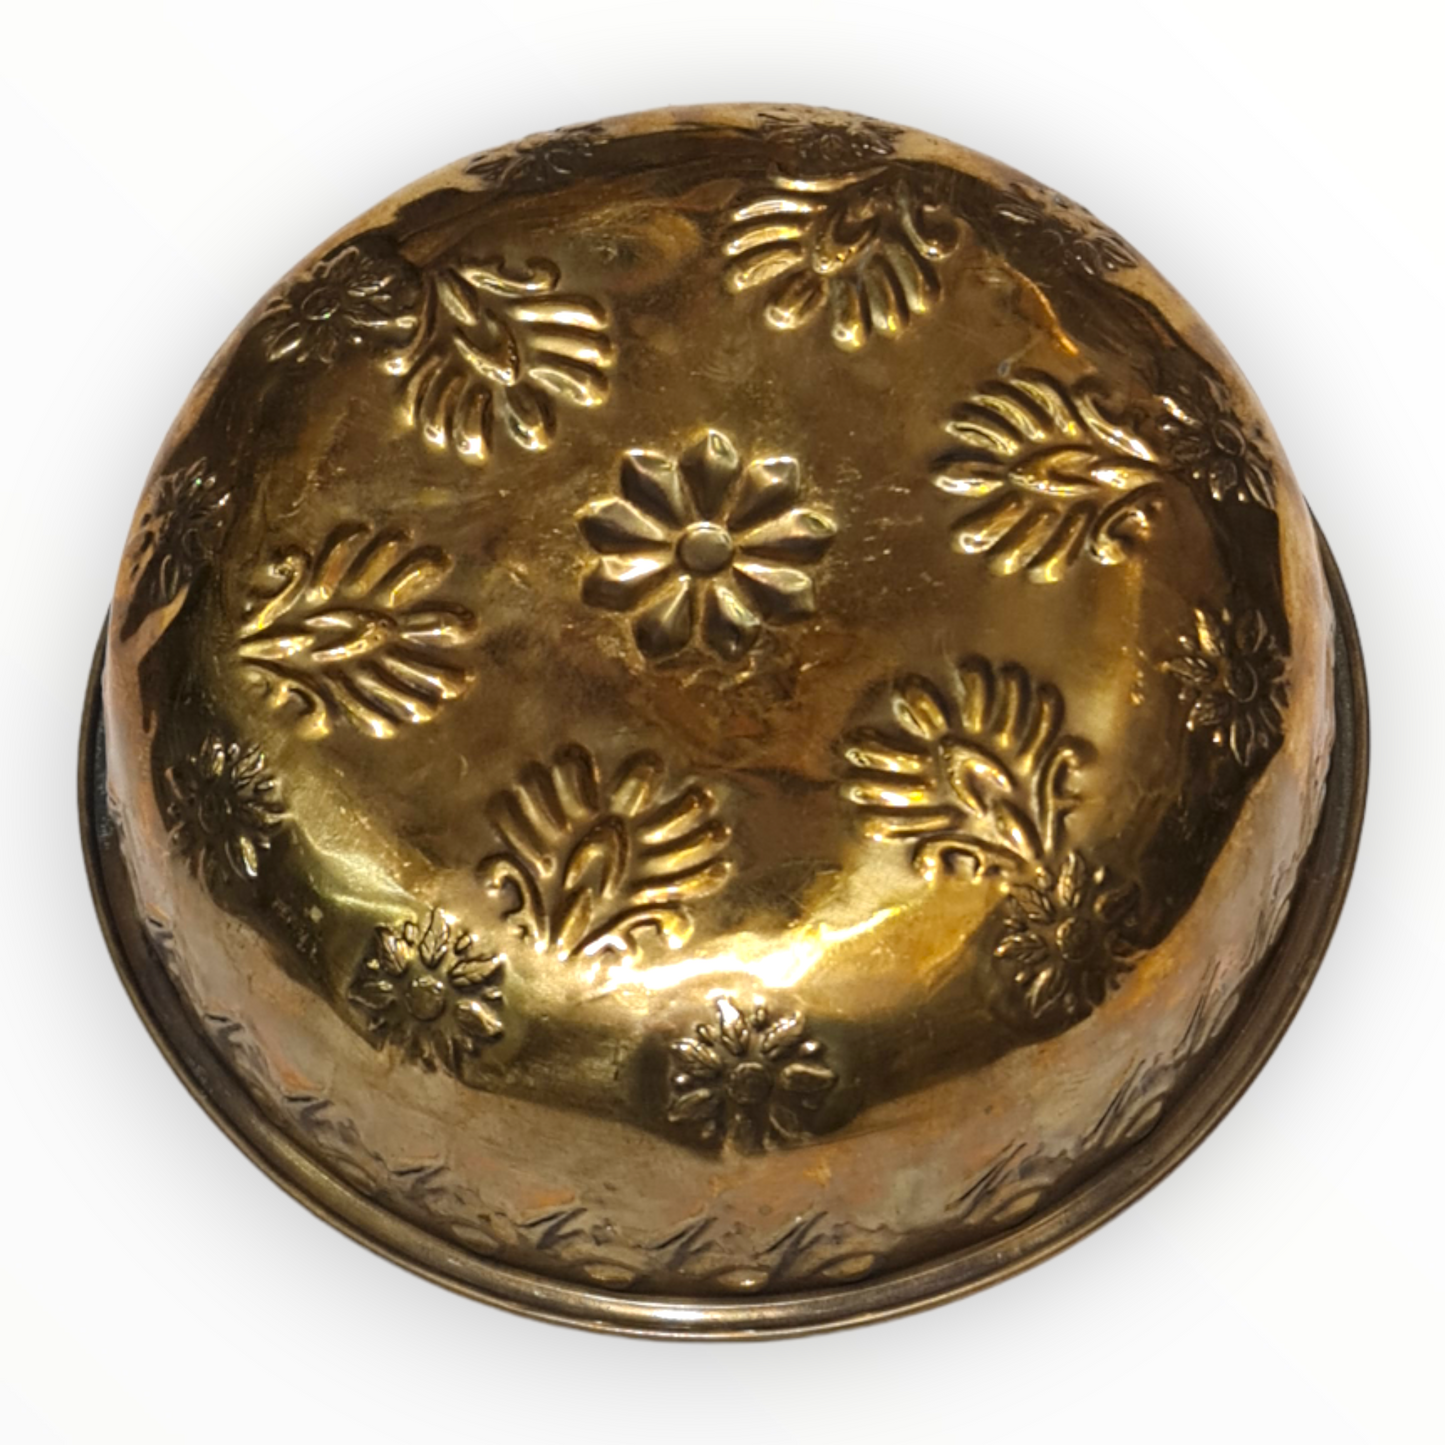 Antique Turkish Hammam Bowl - Turkish Bath Copper Bowl